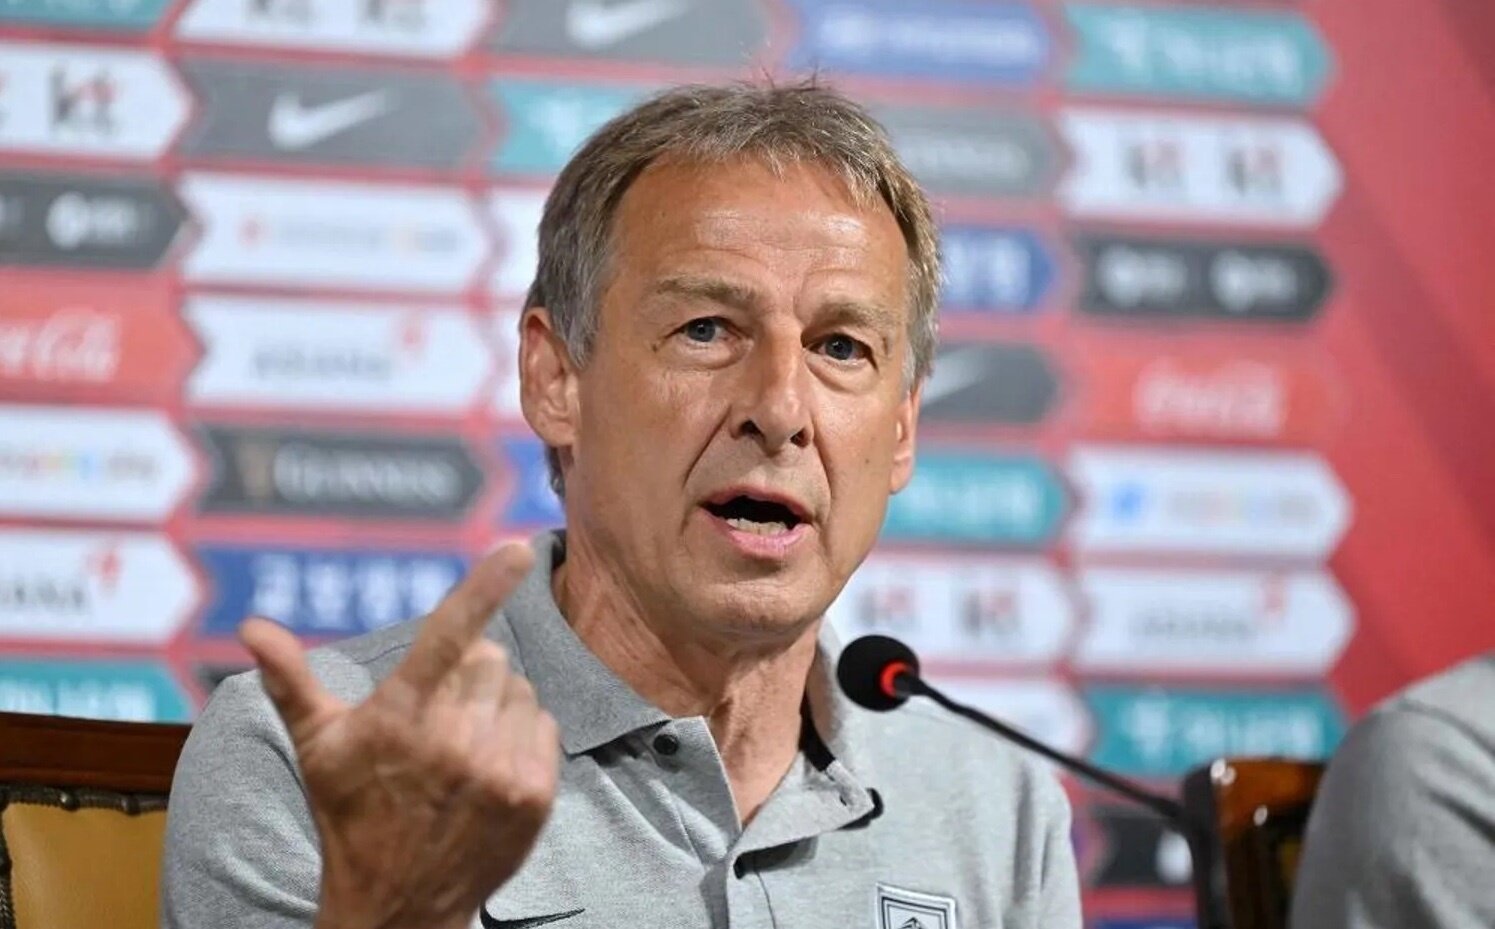 HLV Klinsmann nhận mức lương 60 tỷ đồng một năm.